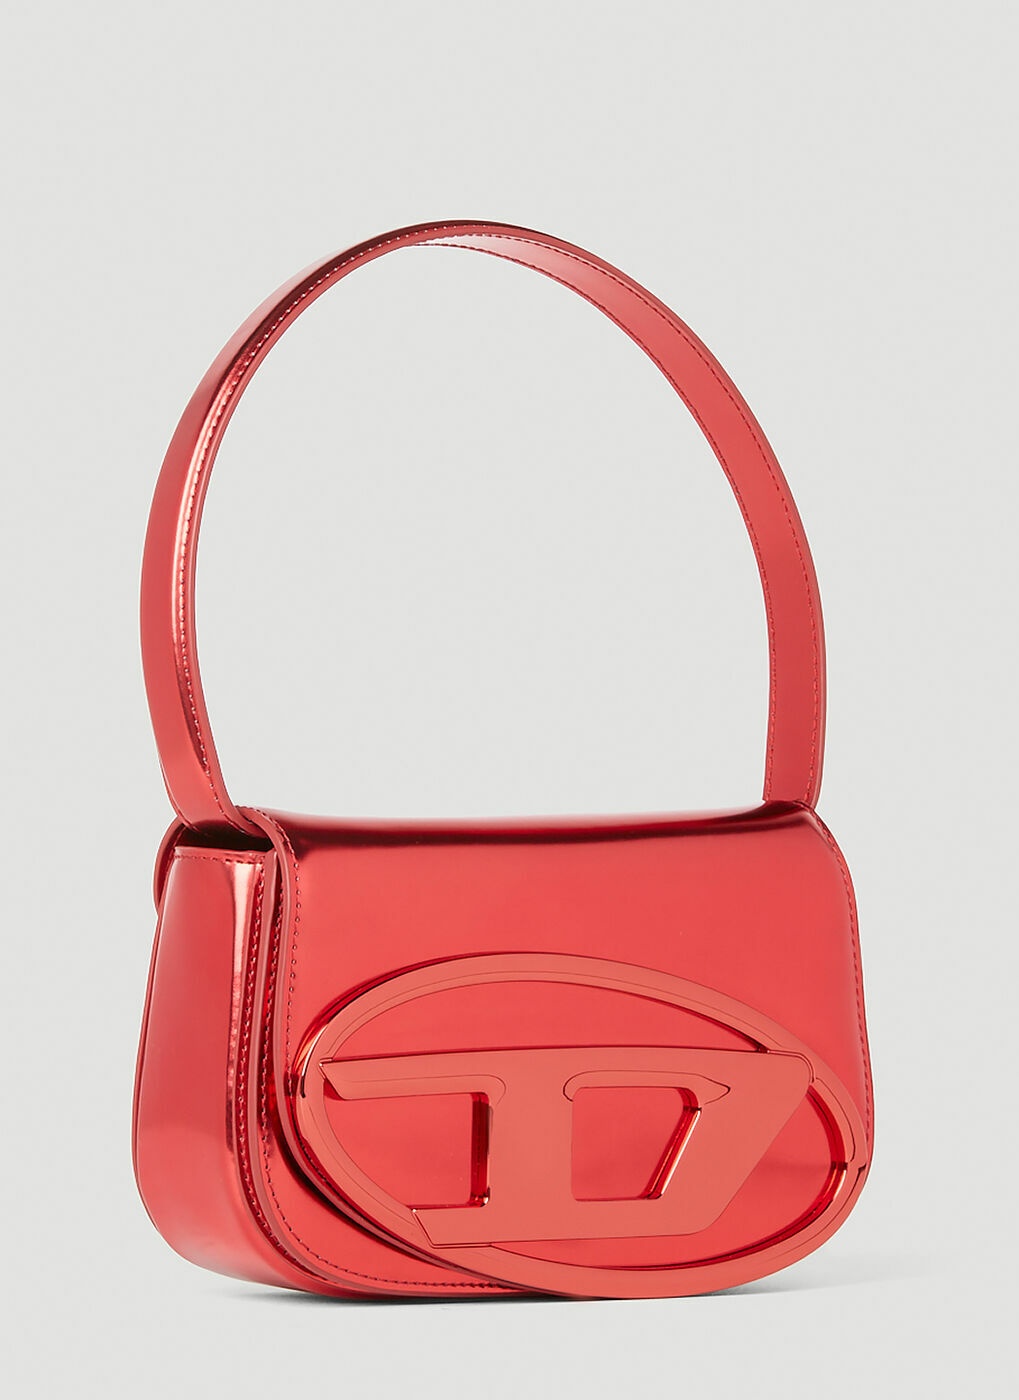 1DR Bag Woman: Leather shoulder Bag black, red & more